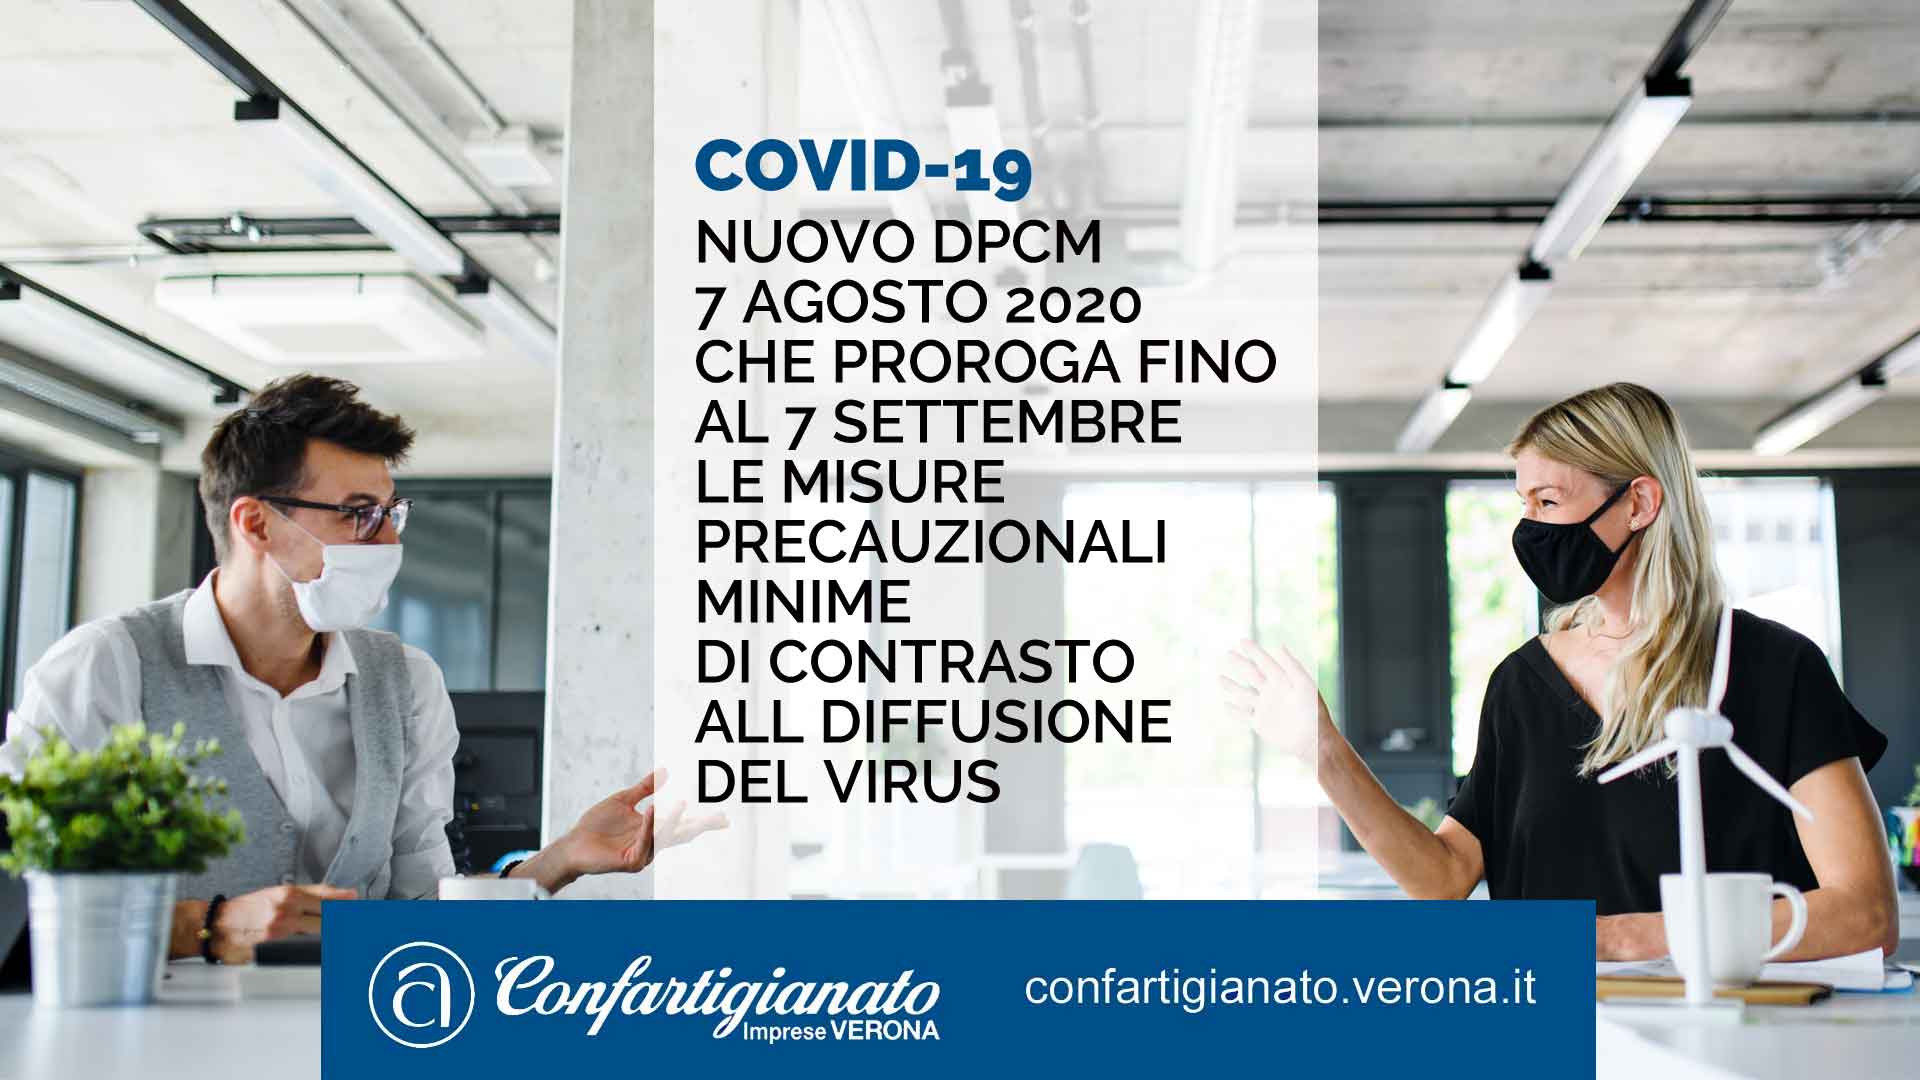 COVID-19 – Nuovo Dpcm 7 agosto 2020 che proroga fino al 7 settembre le misure precauzionali minime di contrasto alla diffusione del virus